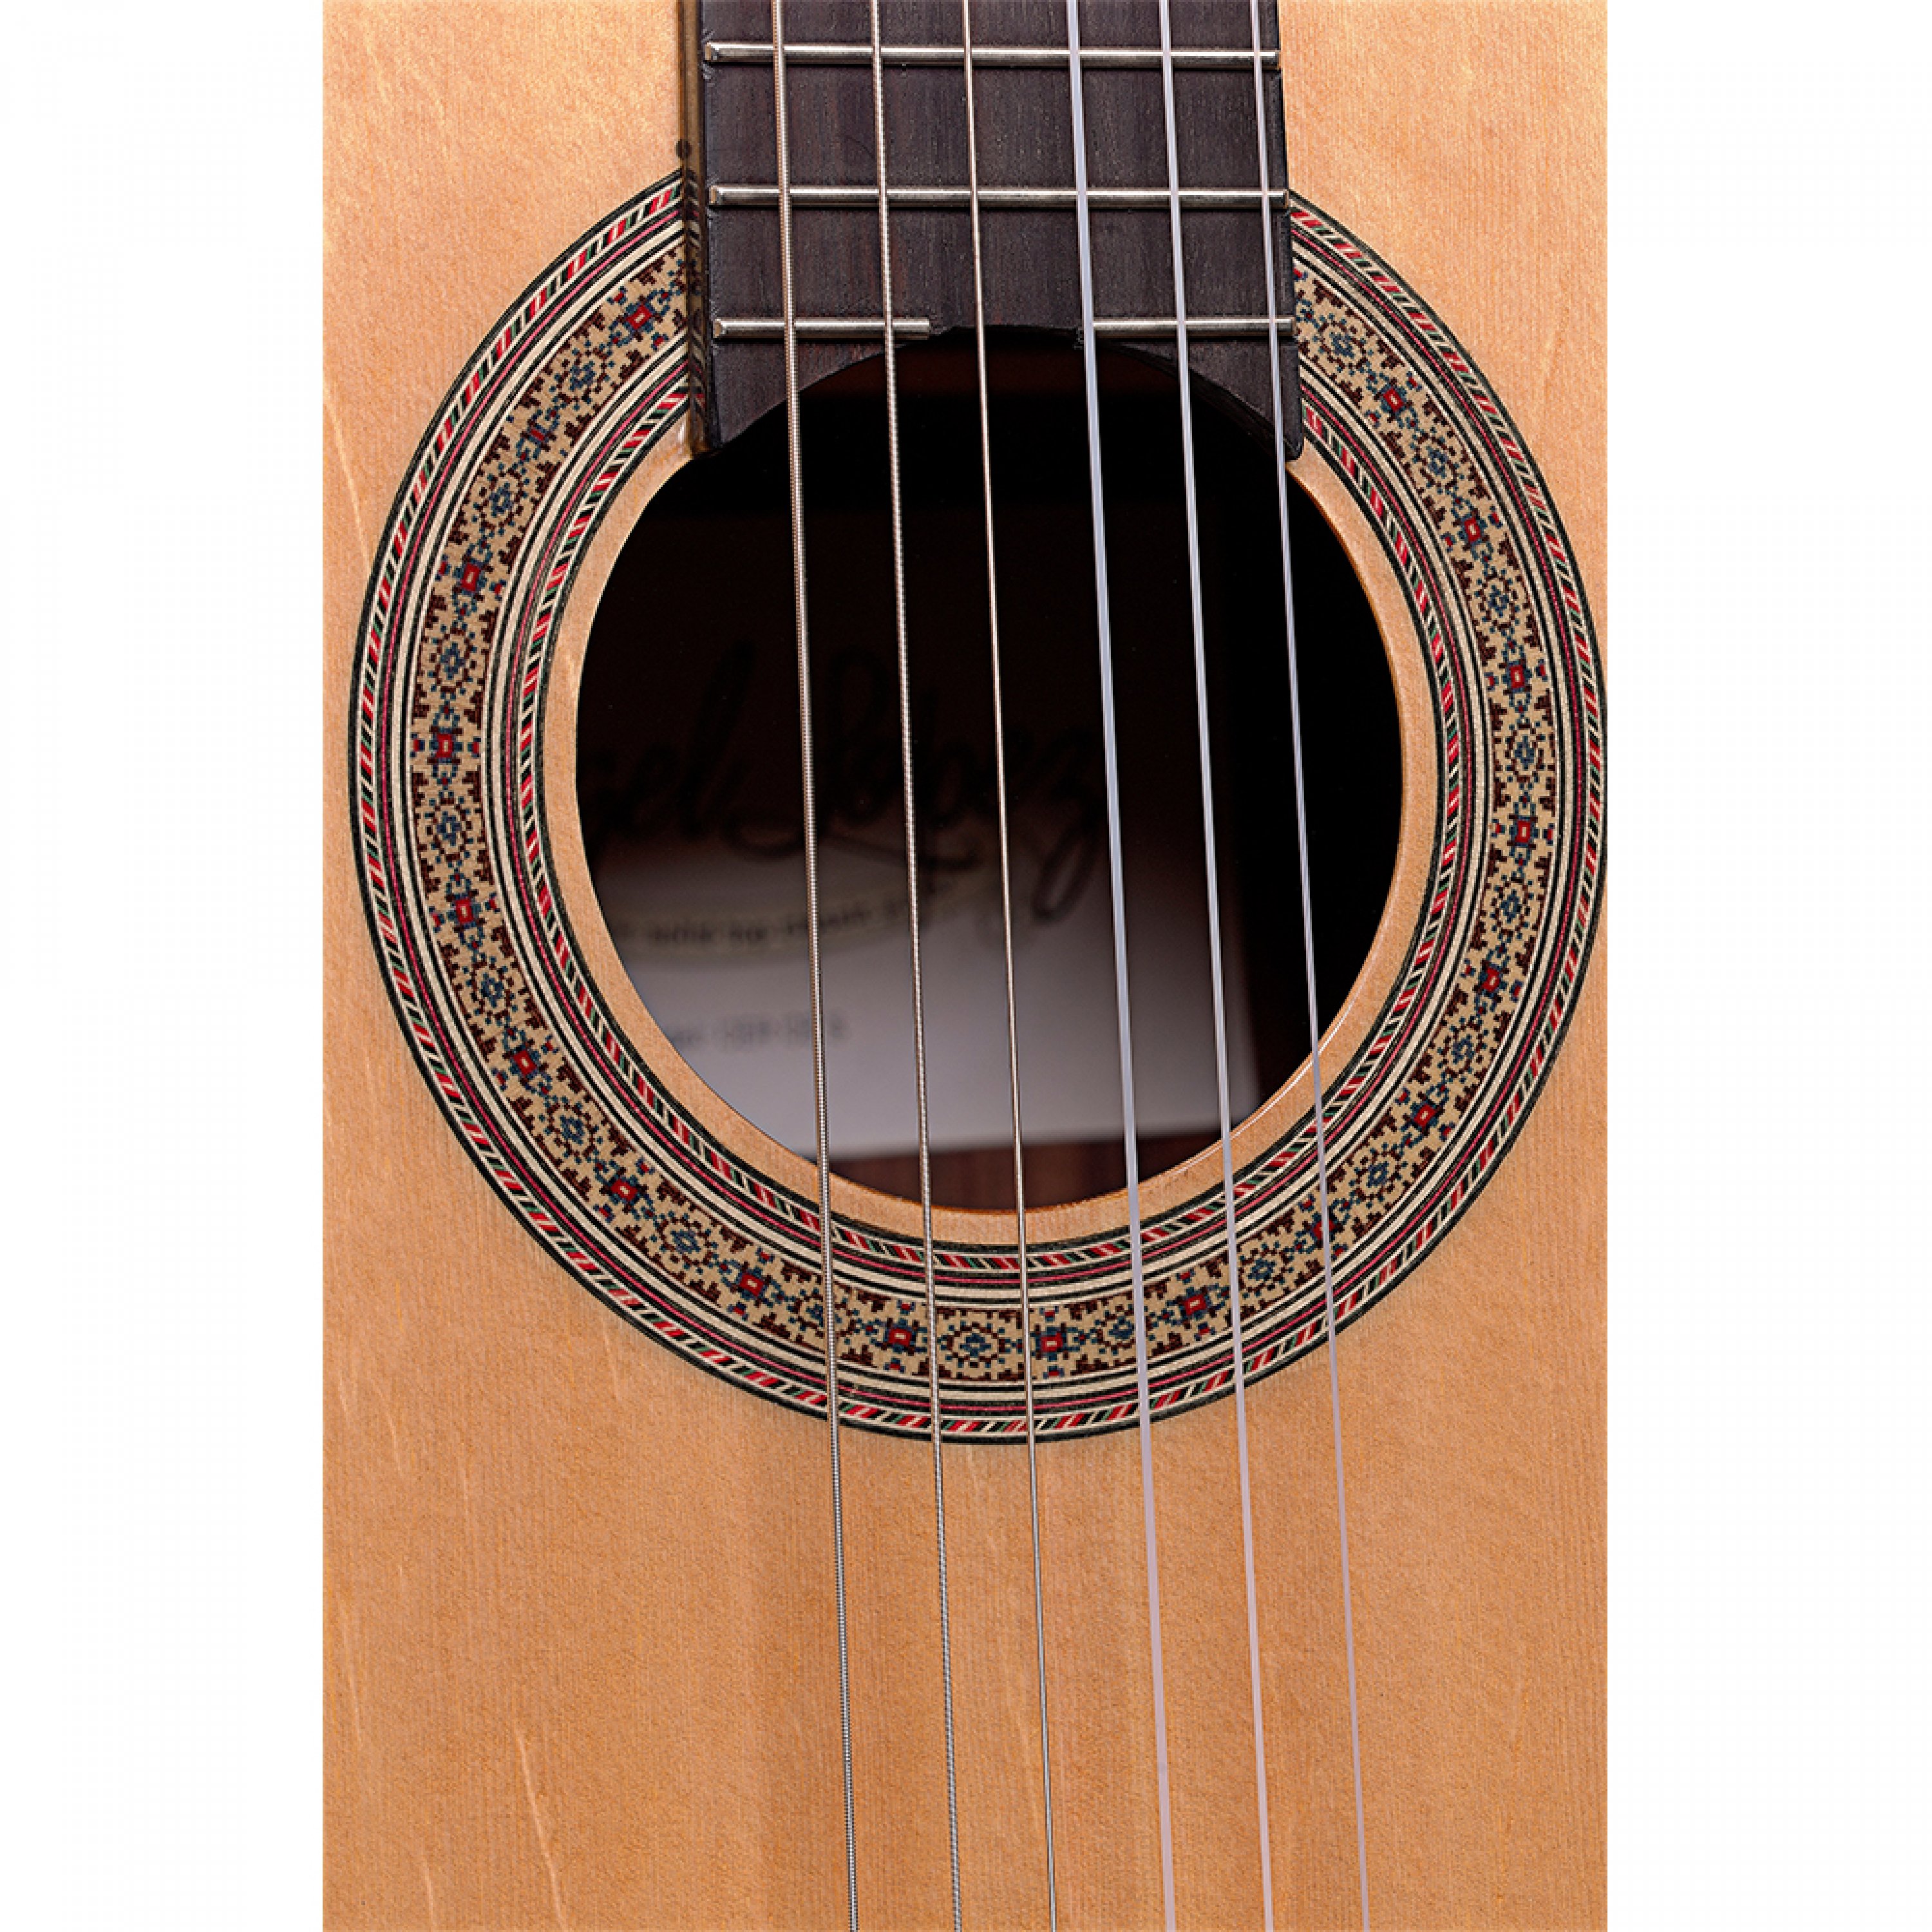 Angel Lopez Cer Tce S Cereza 4/4 Thinline Cw Epicea Palissandre Rw - Natural - Guitare Classique Format 4/4 - Variation 2